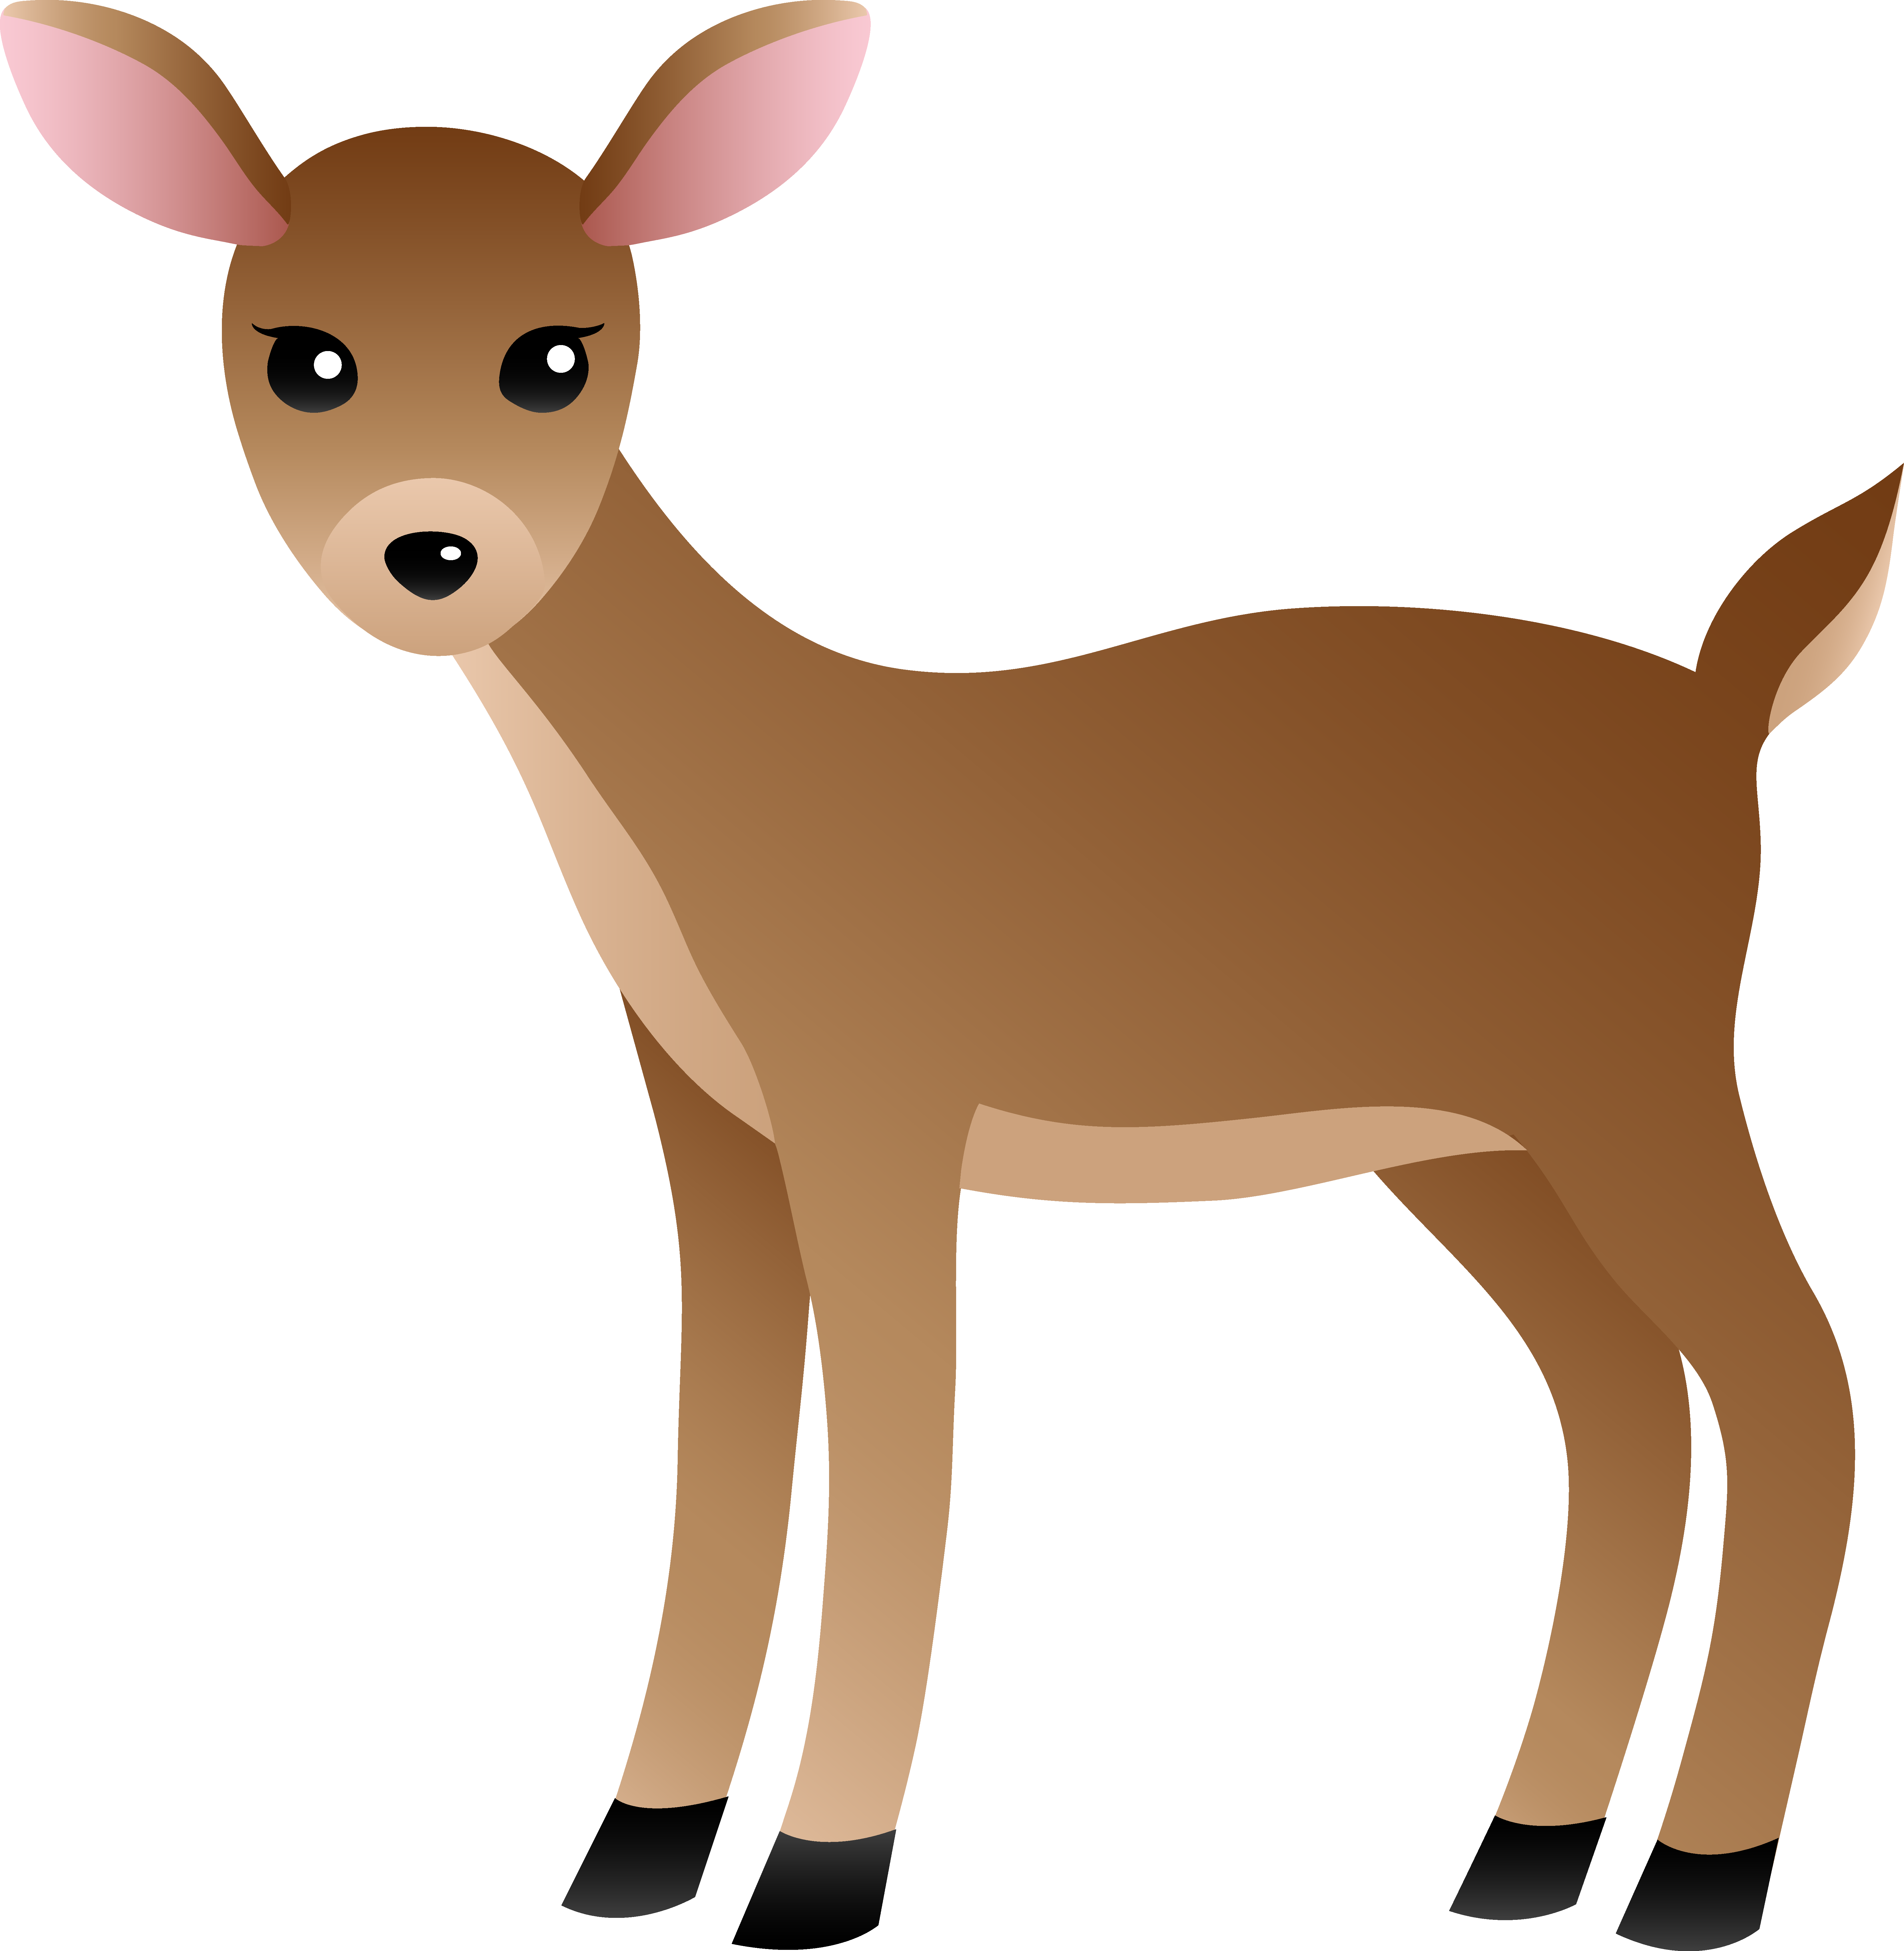 Deer Clip Art